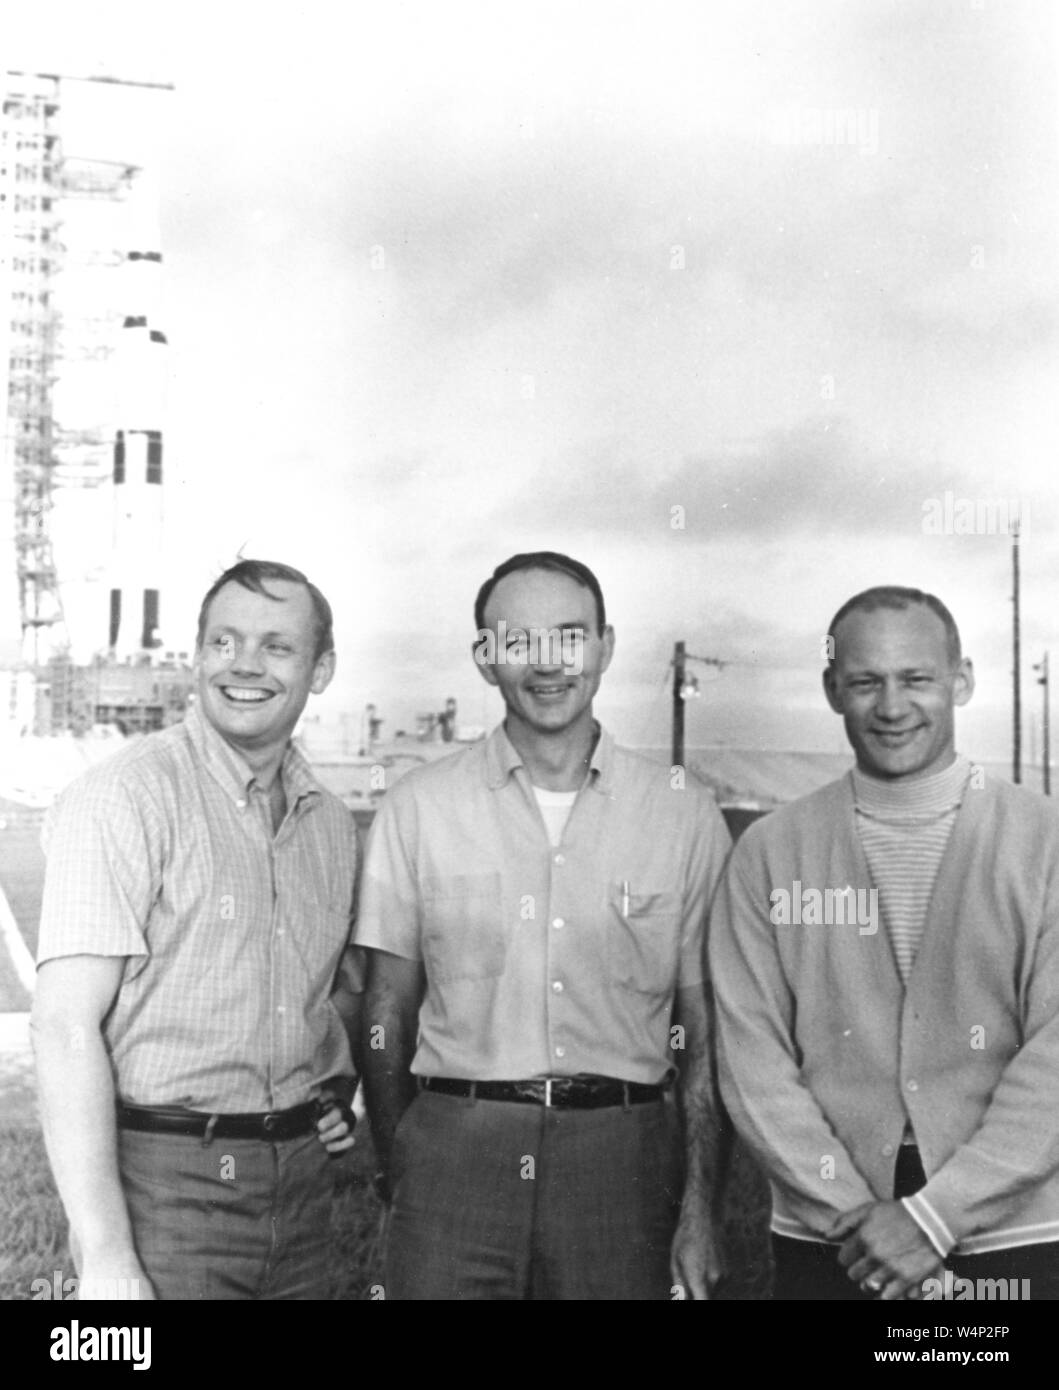 Die NASA Apollo 11 Crew, Neil A Armstrong, Michael Collins und Buzz Aldrin, stand in der Nähe des Apollo/Saturn V im Kennedy Space Center in Florida, 16. Juli 1969. Mit freundlicher Genehmigung der Nationalen Luft- und Raumfahrtbehörde (NASA). () Stockfoto